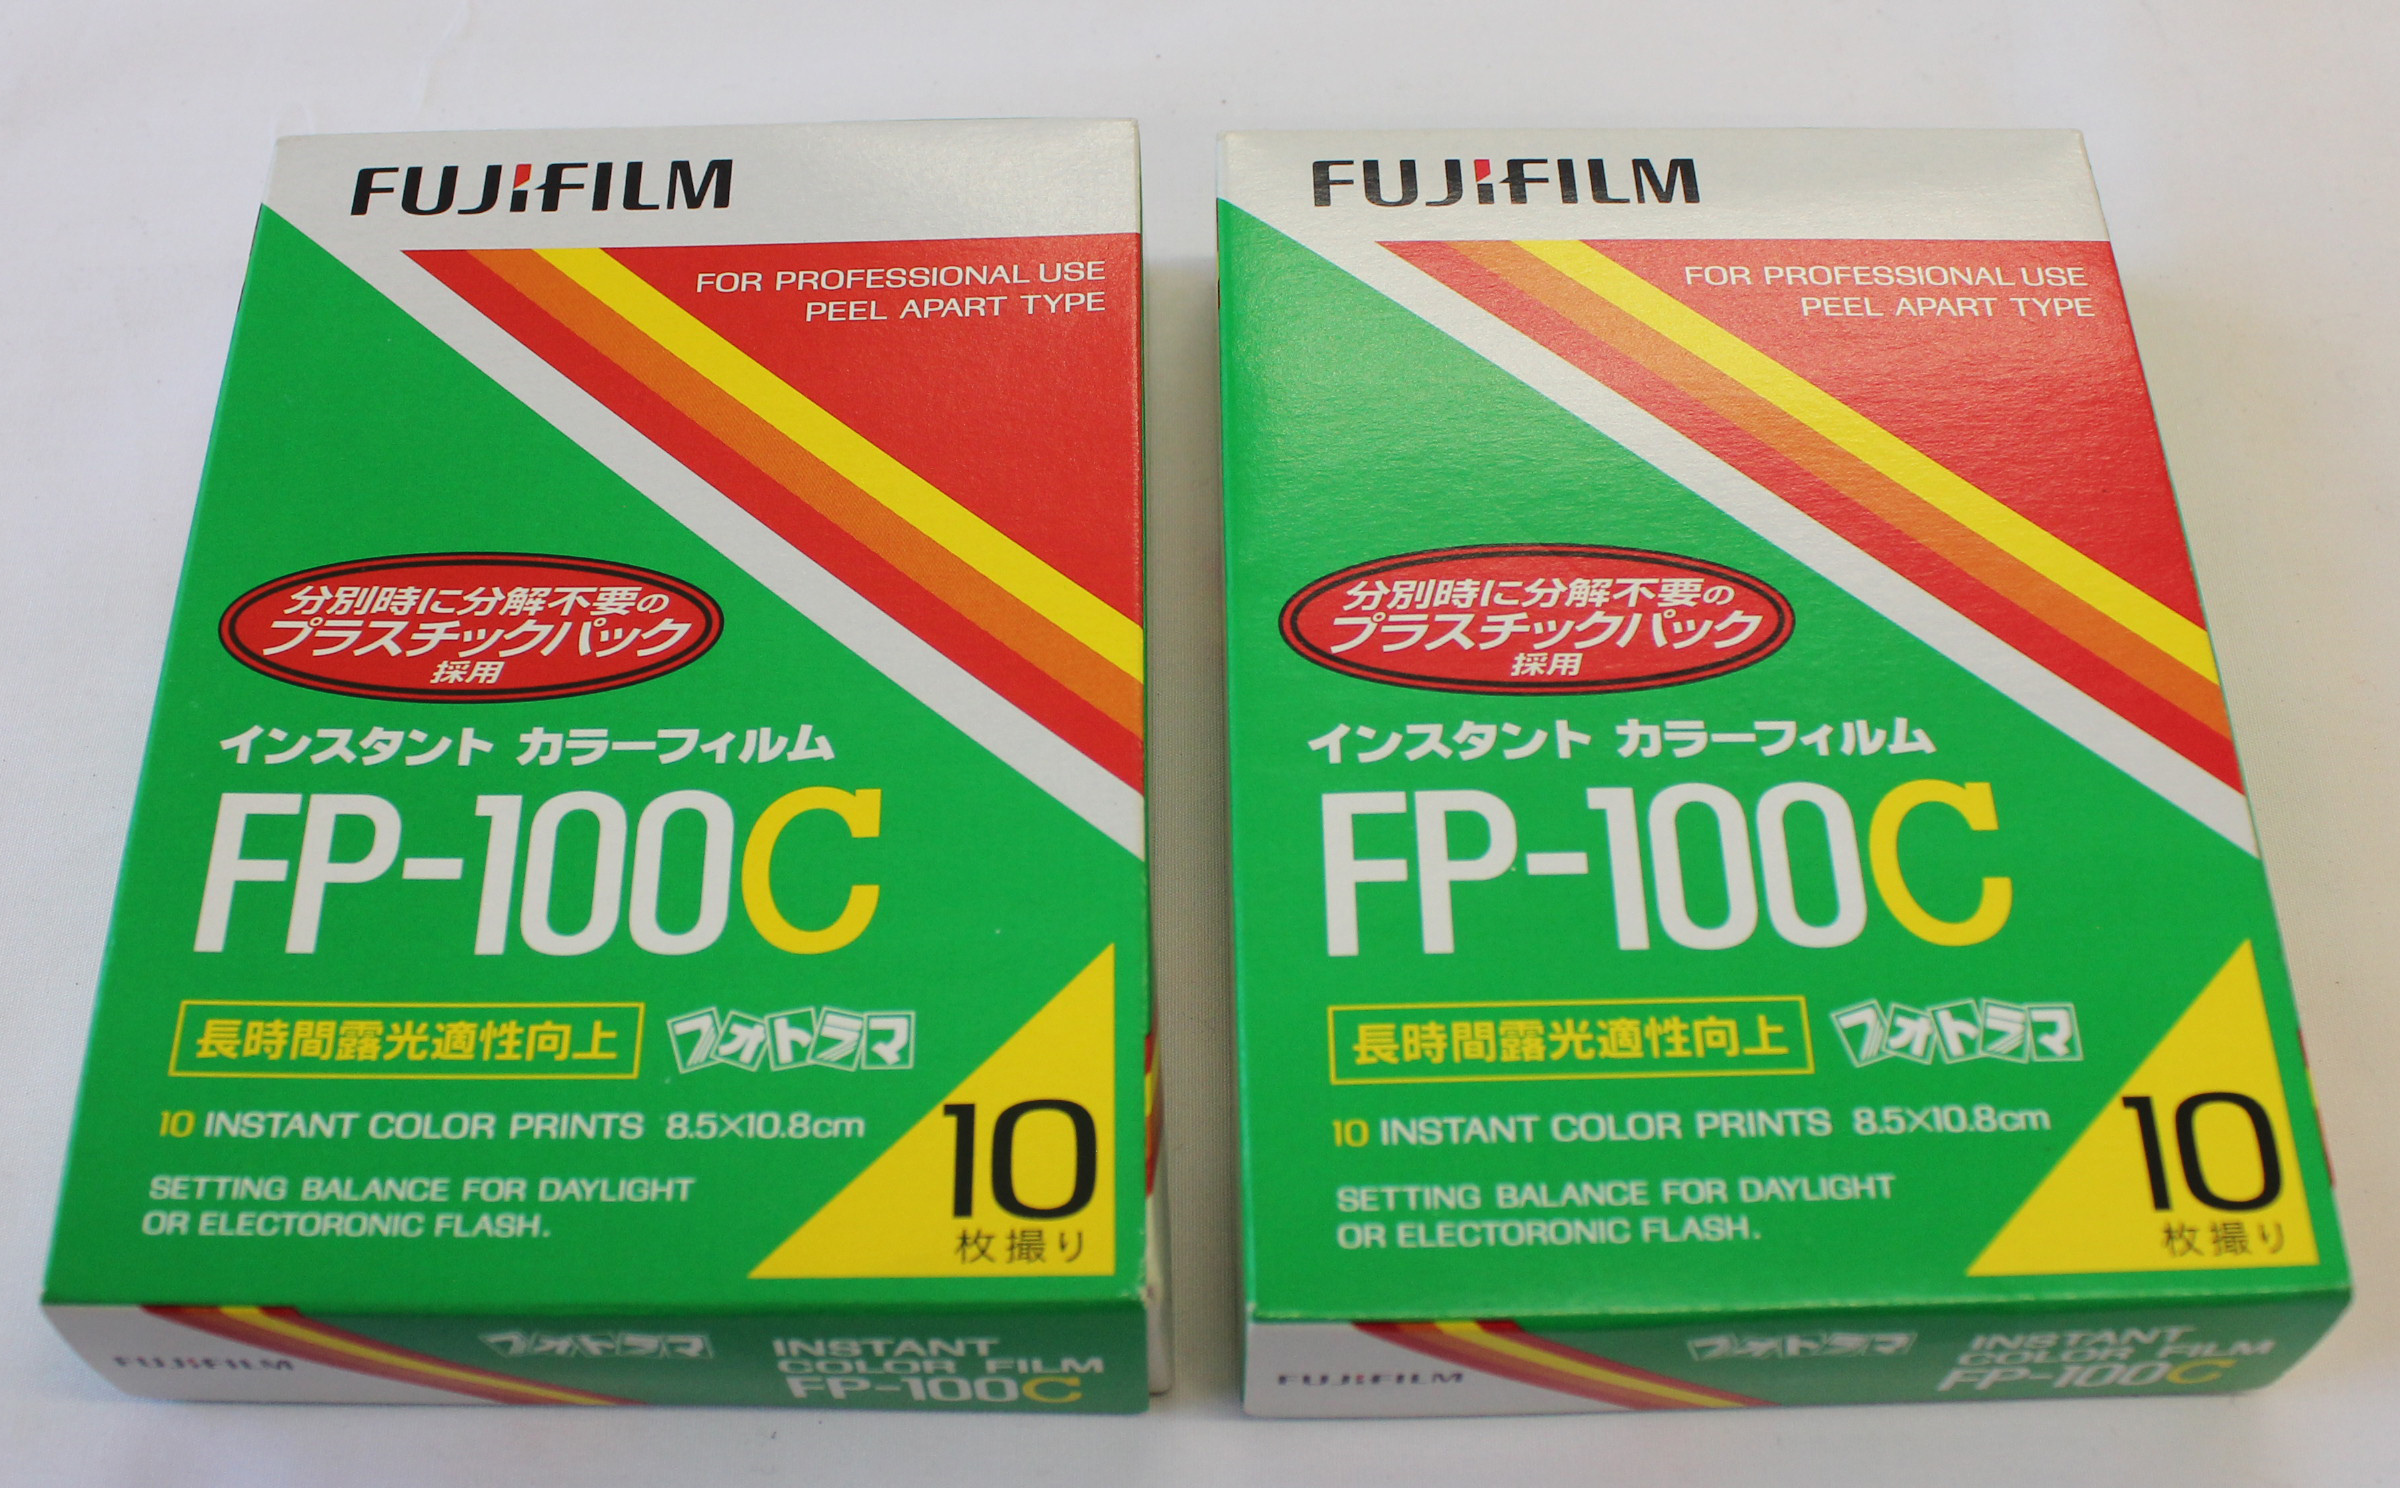 1 UN-BOXED PACK FUJIFILM FP-100c INSTANT PACK FILM 